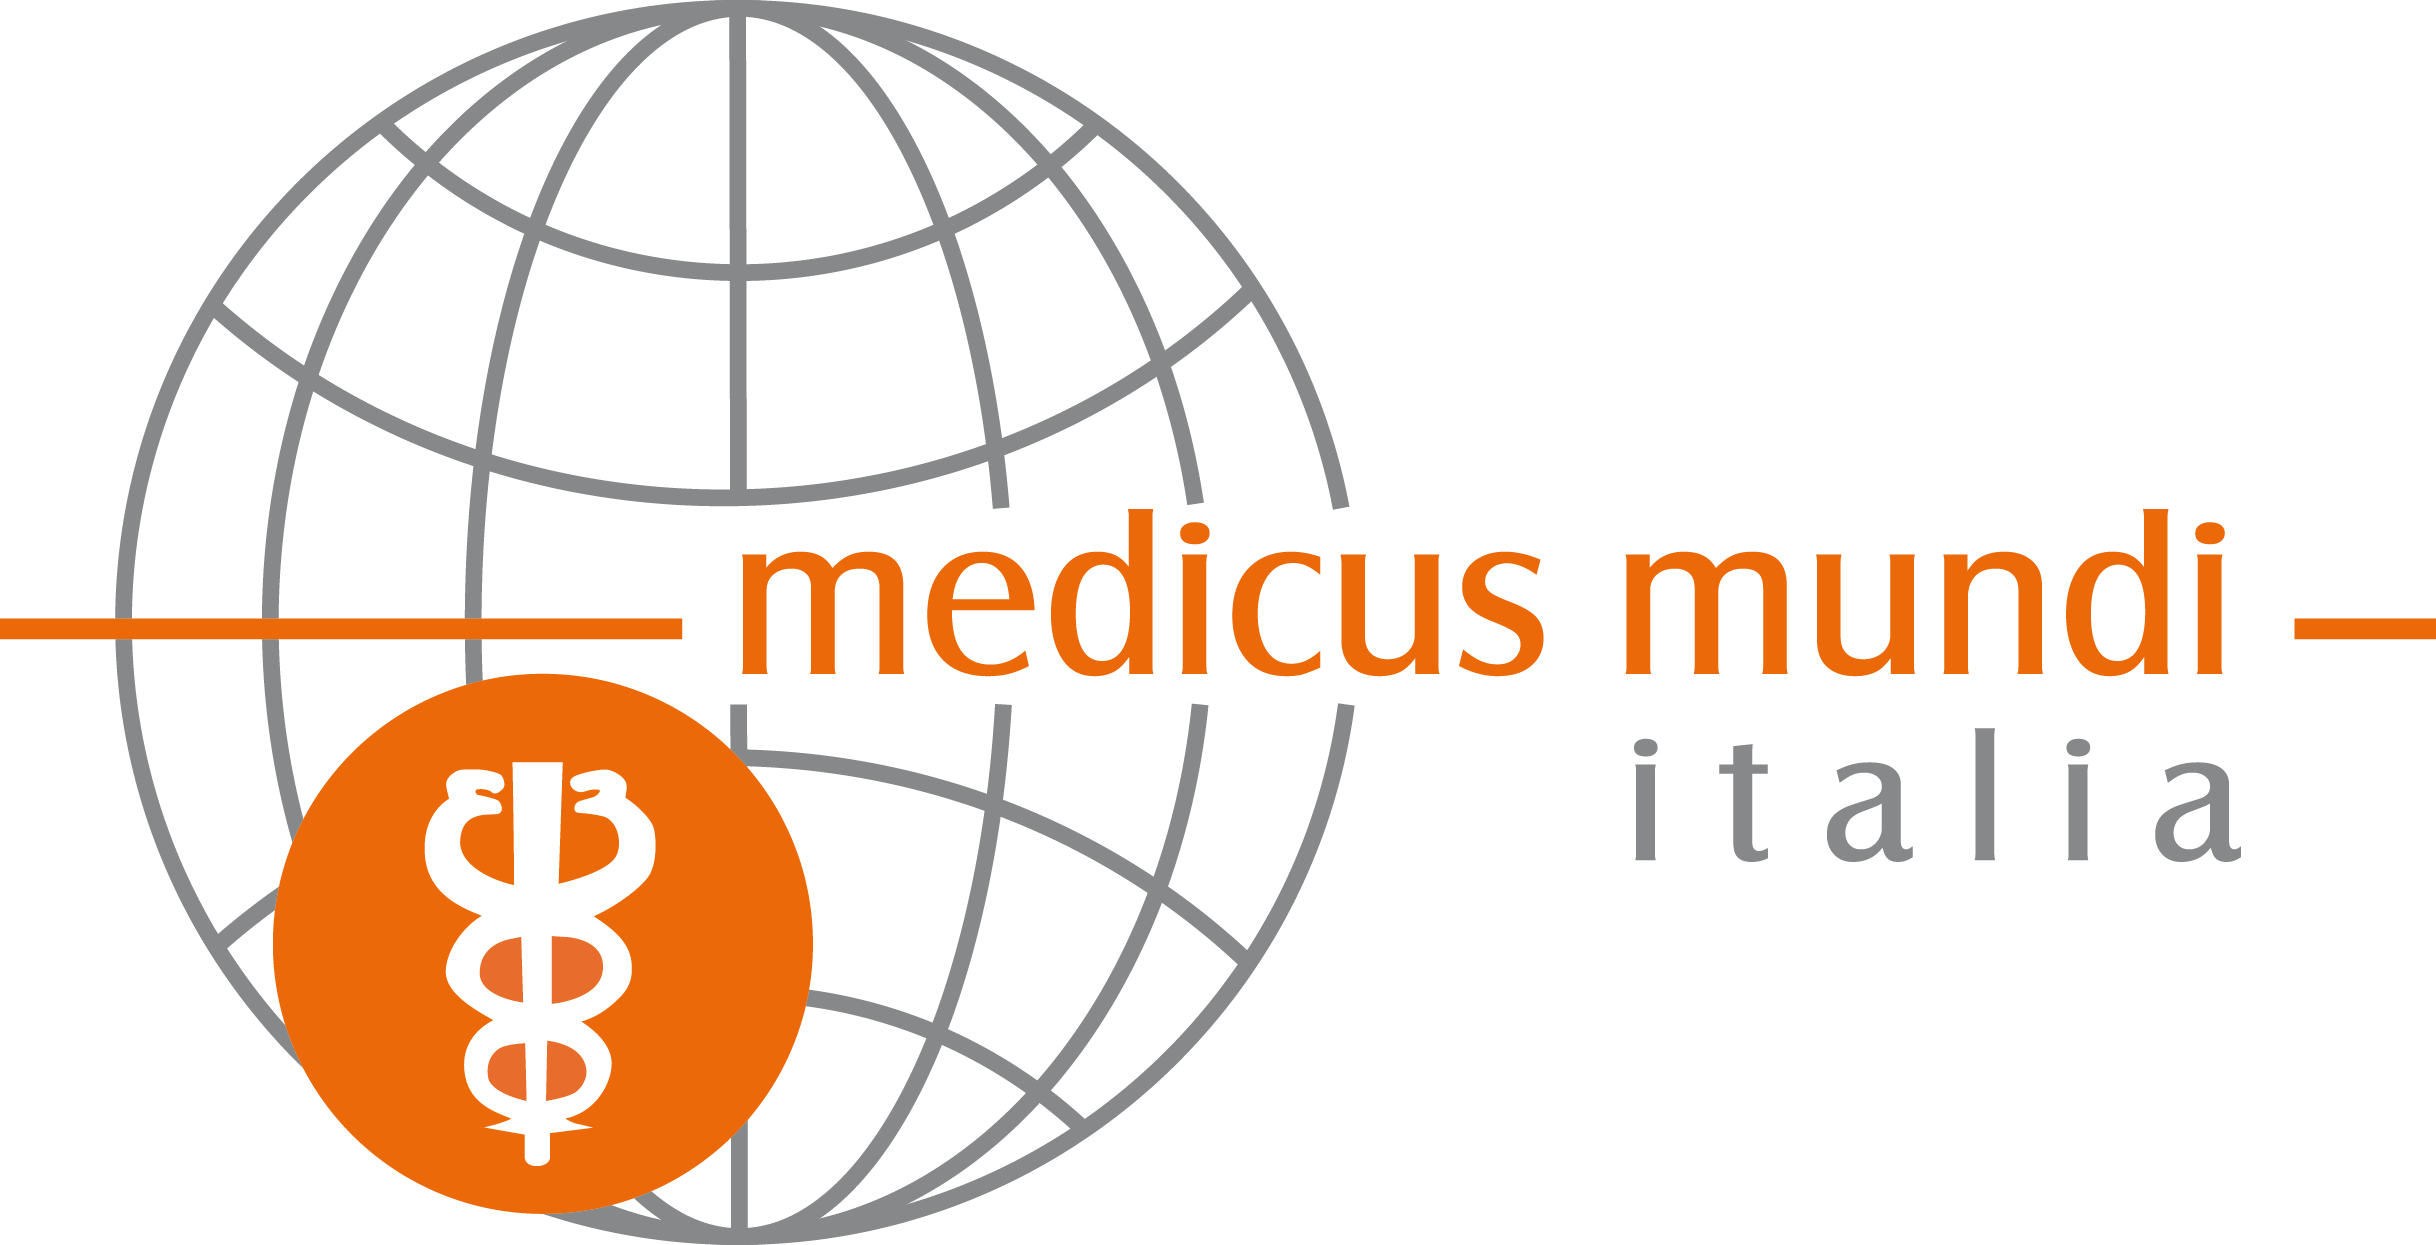 Medicus Mundi Italia